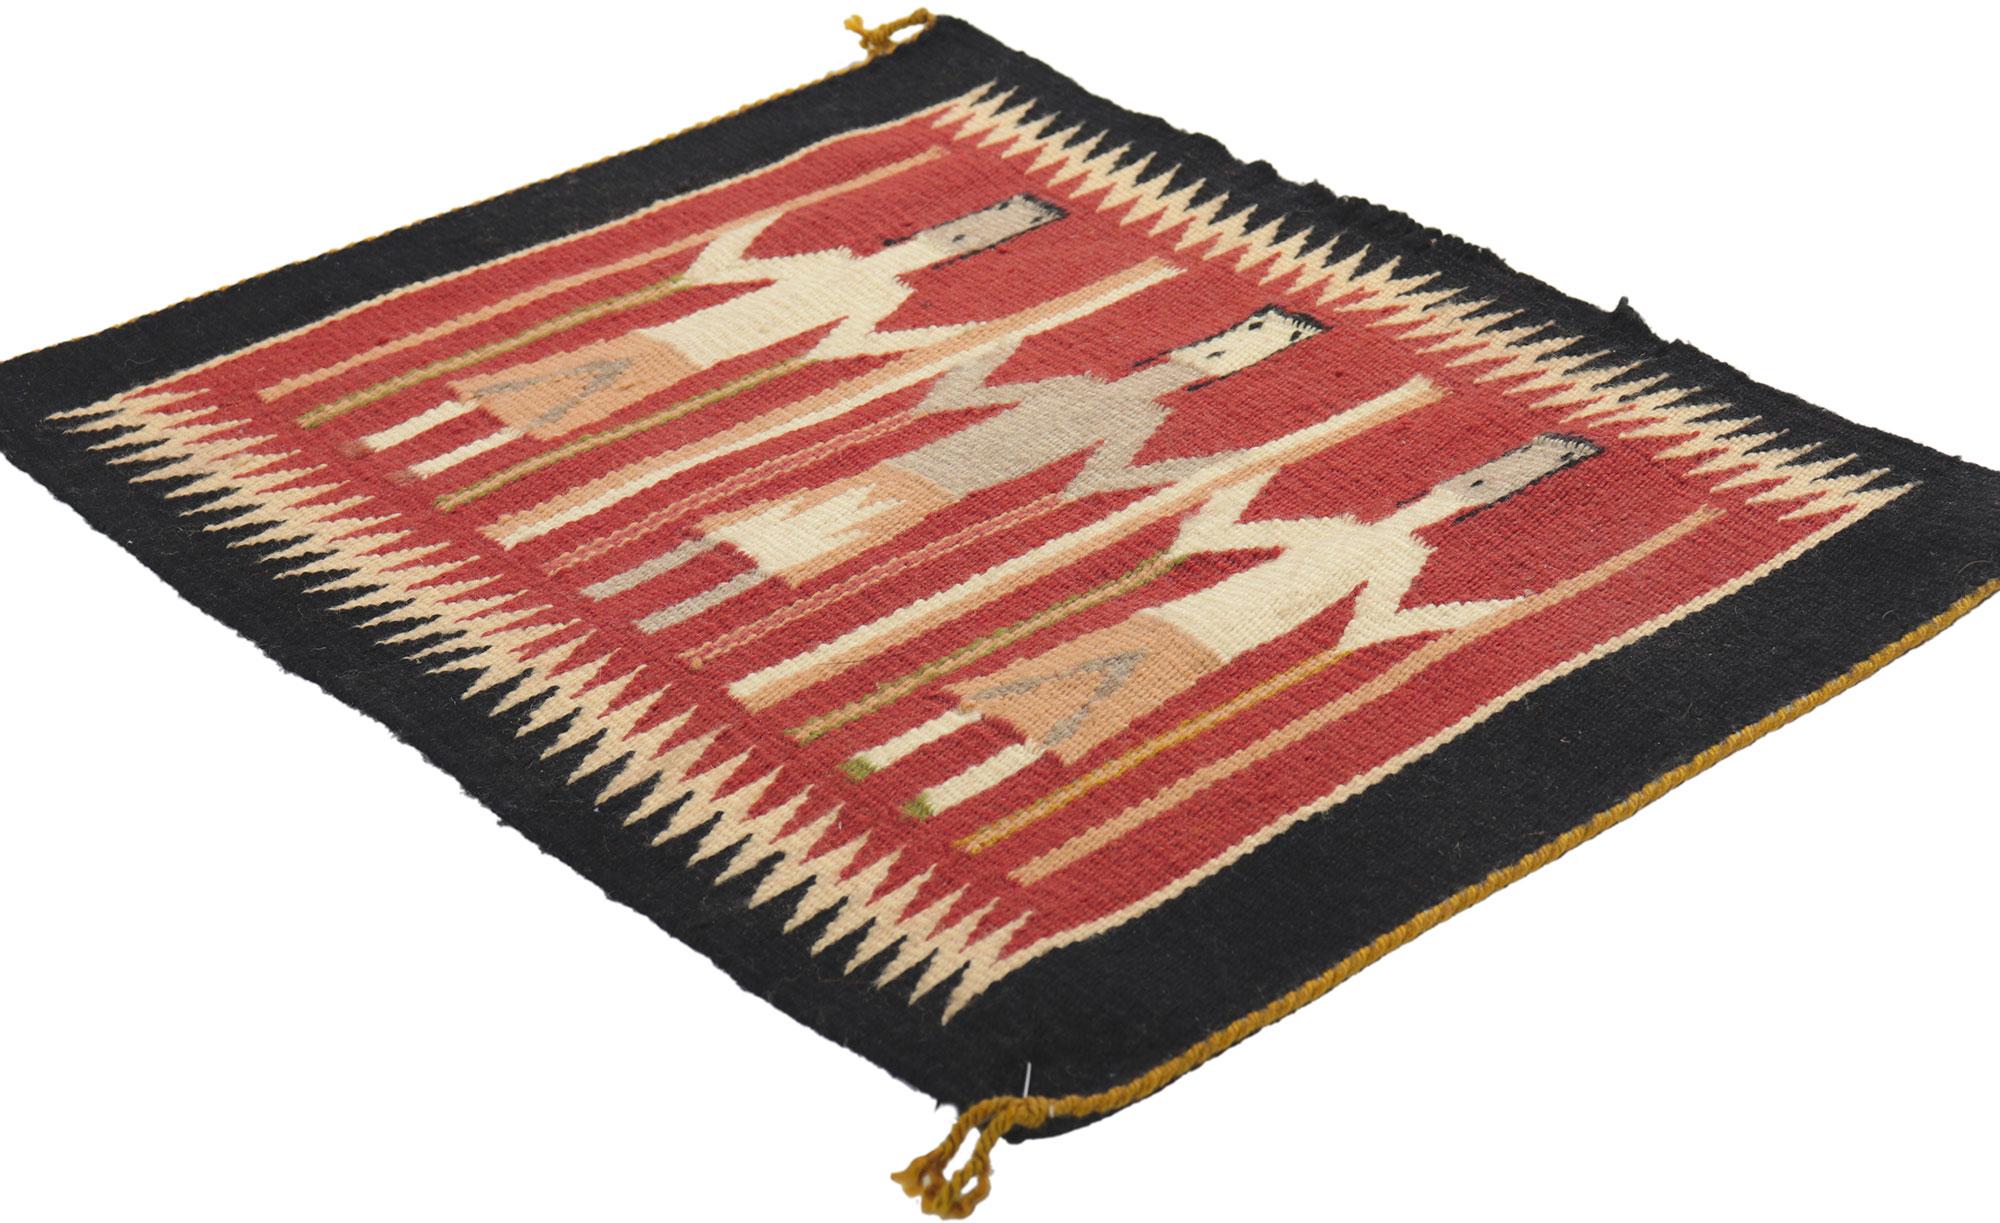 78426 Vintage Navajo Yeibichai Teppich, 01'06 x 01'10.
Dieser handgewebte Yeibichai-Teppich aus Navajo-Wolle mit seinen winzigen Details und seinem kühnen, ausdrucksstarken Design ist eine fesselnde Vision gewebter Schönheit. Das rote Feld mit